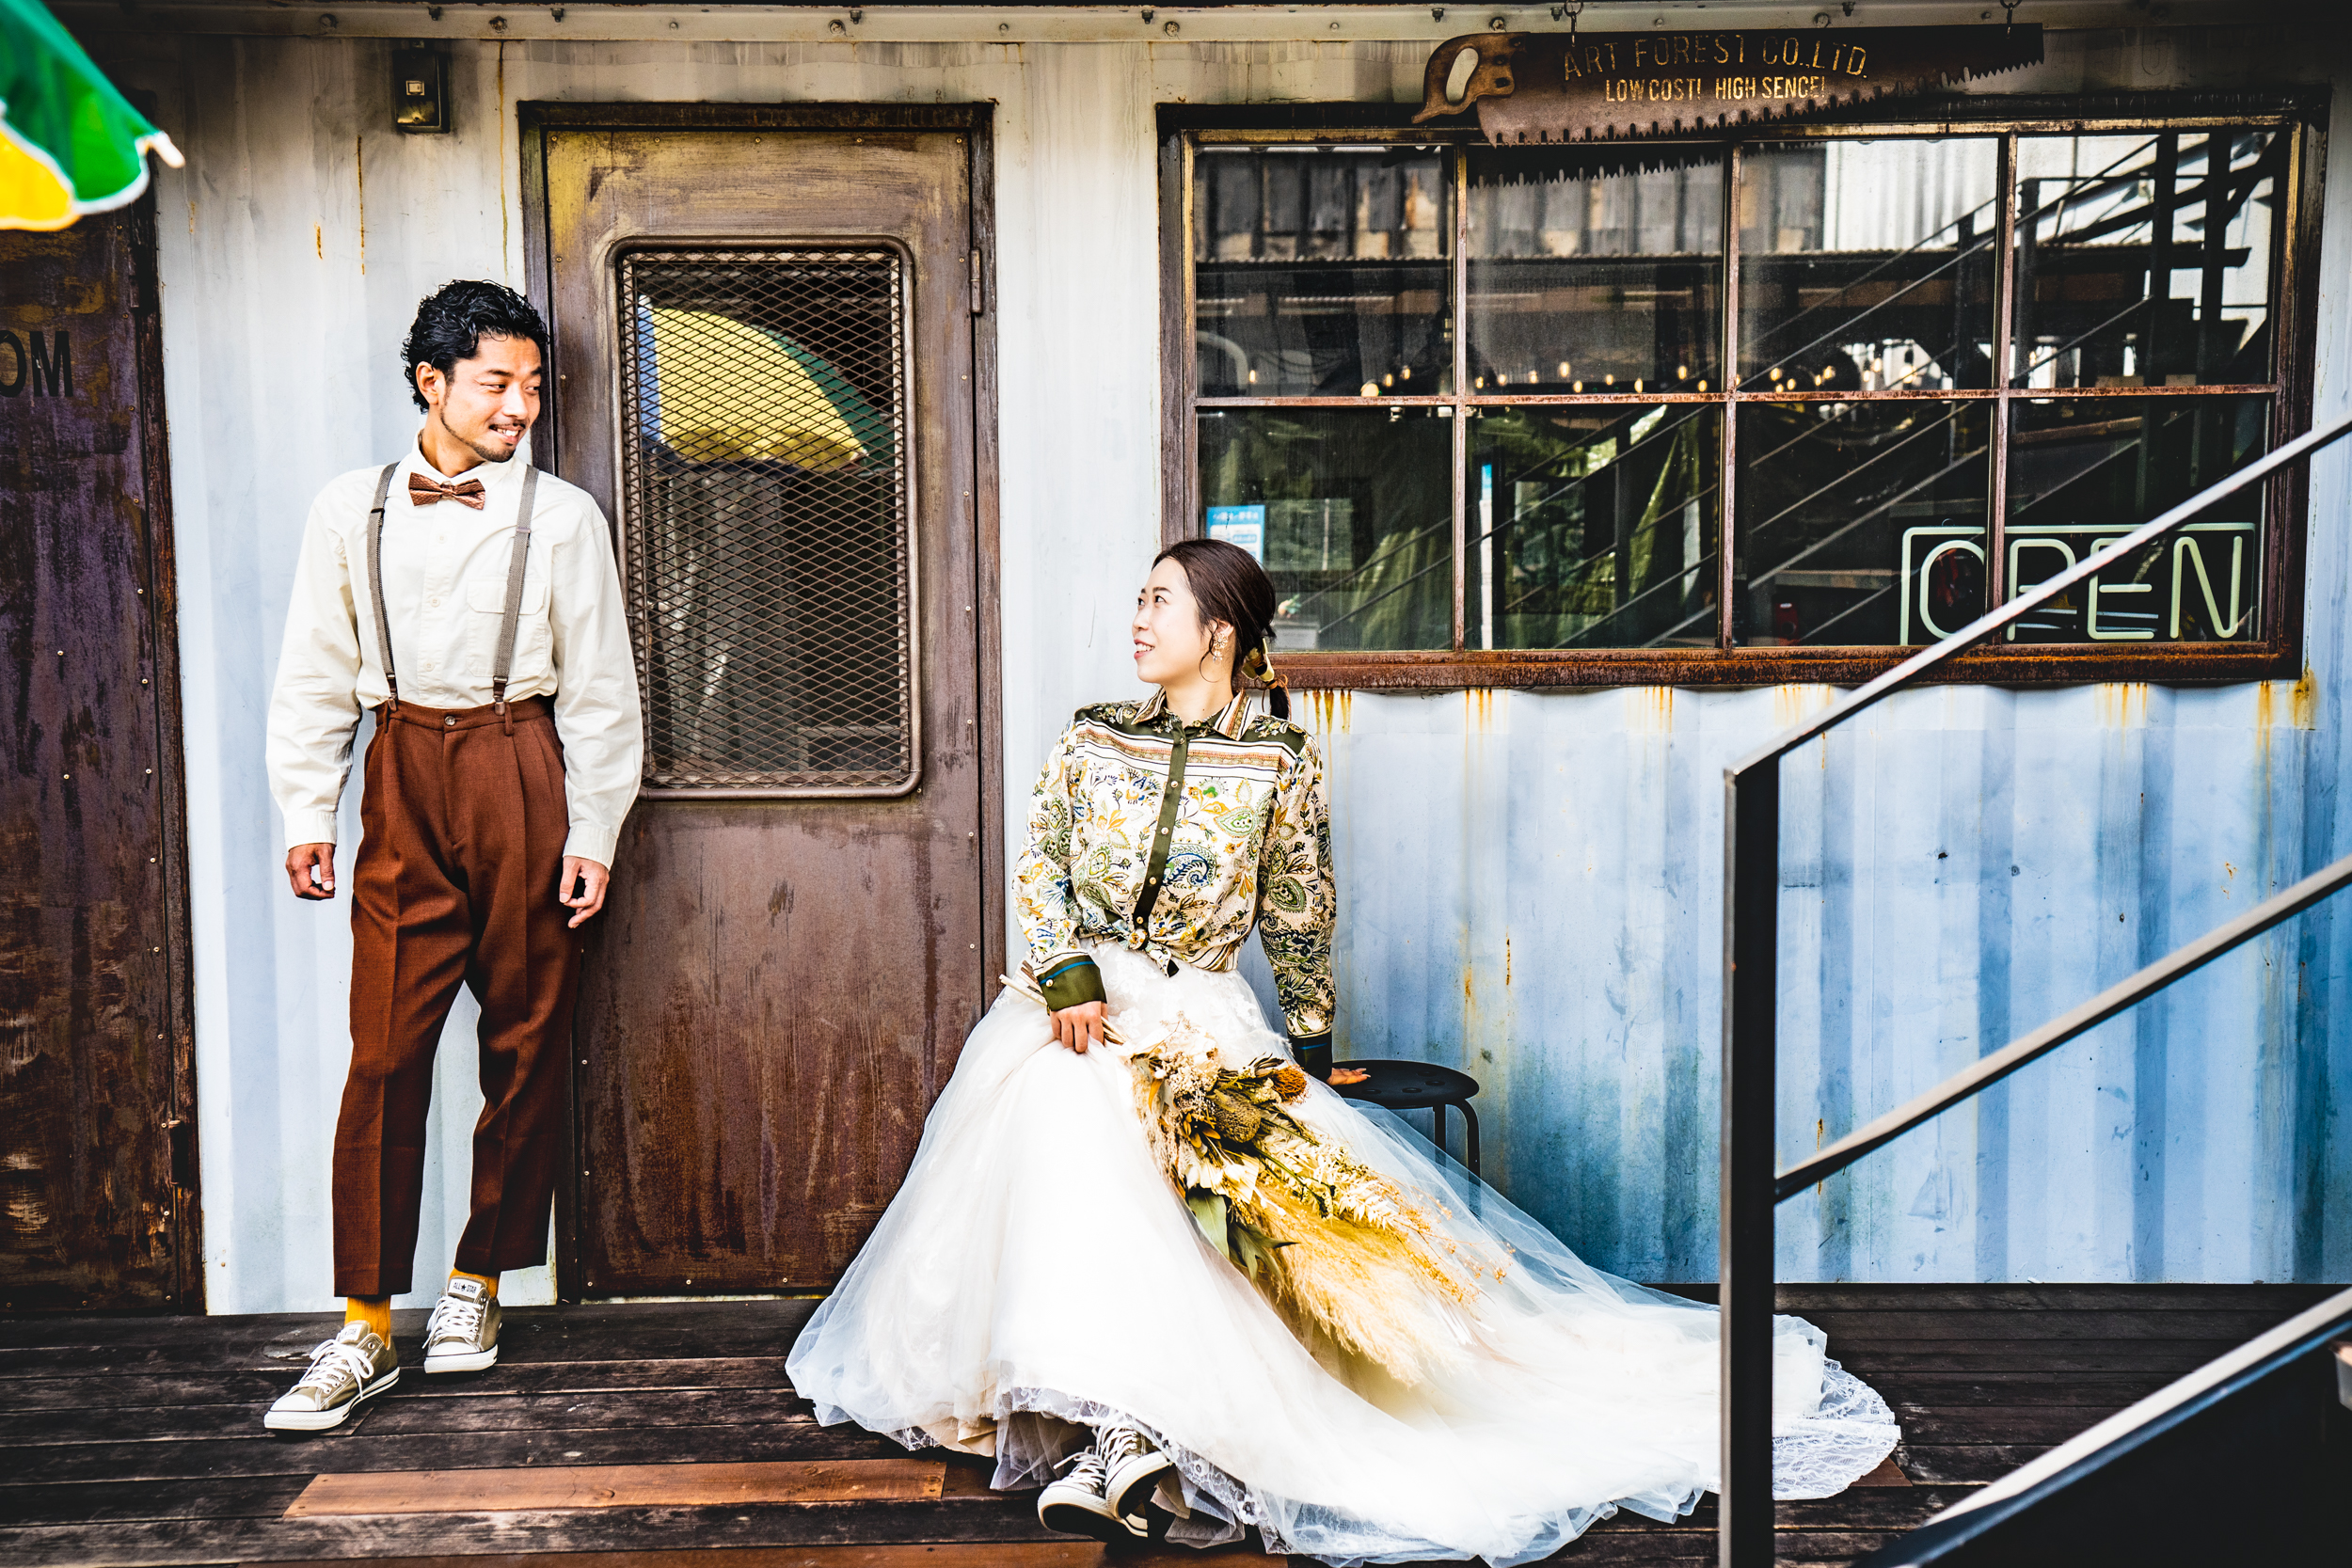 ウェディングドレスにプラスアイテムで一味違ったカジュアルな結婚写真を コーデ例あり 結婚写真 フォトウェディング 徳島